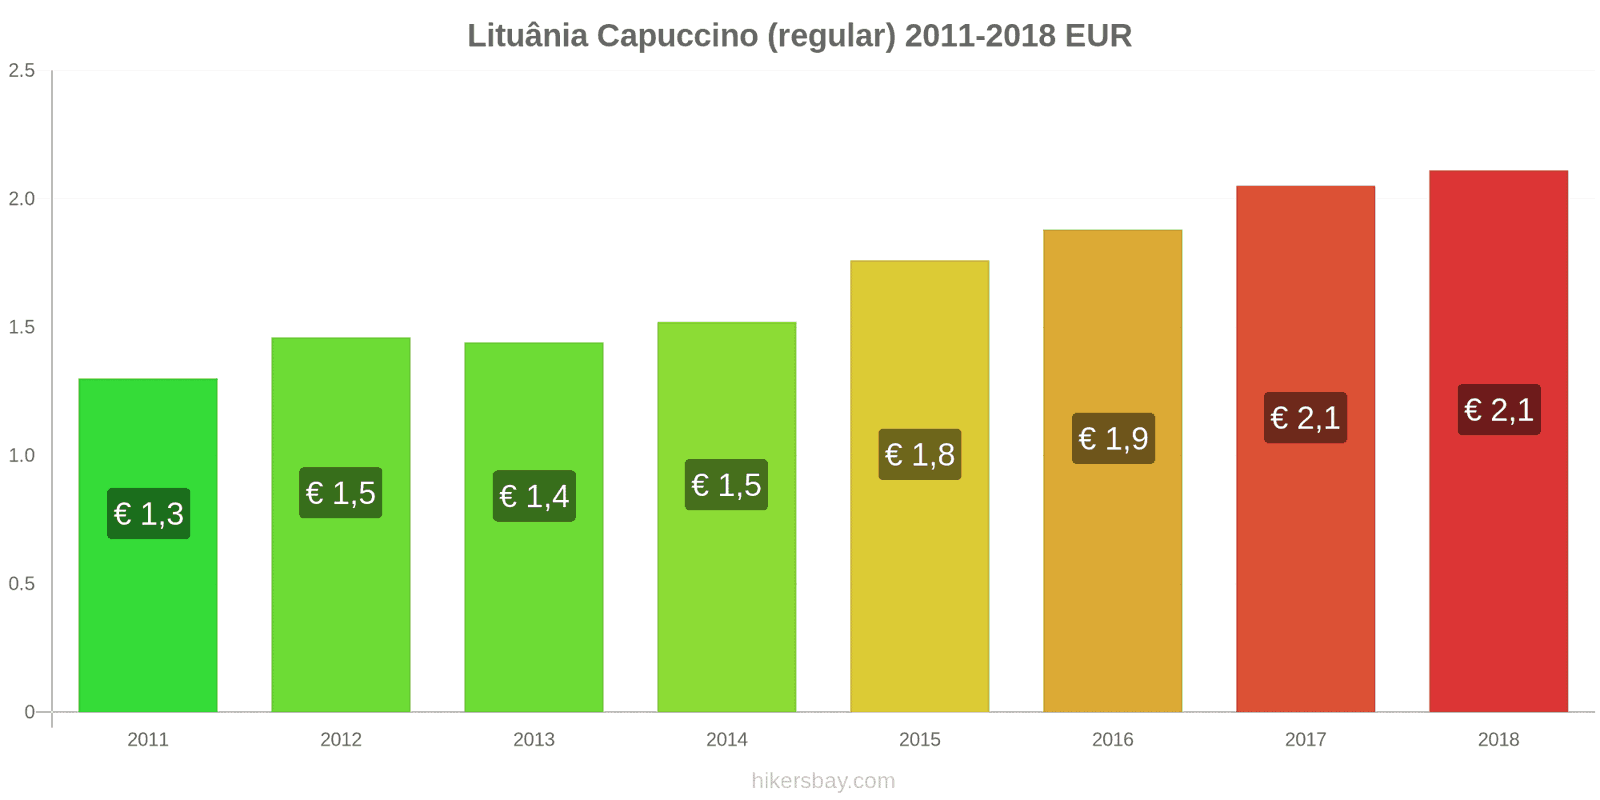 Lituânia mudanças de preços Cappuccino hikersbay.com